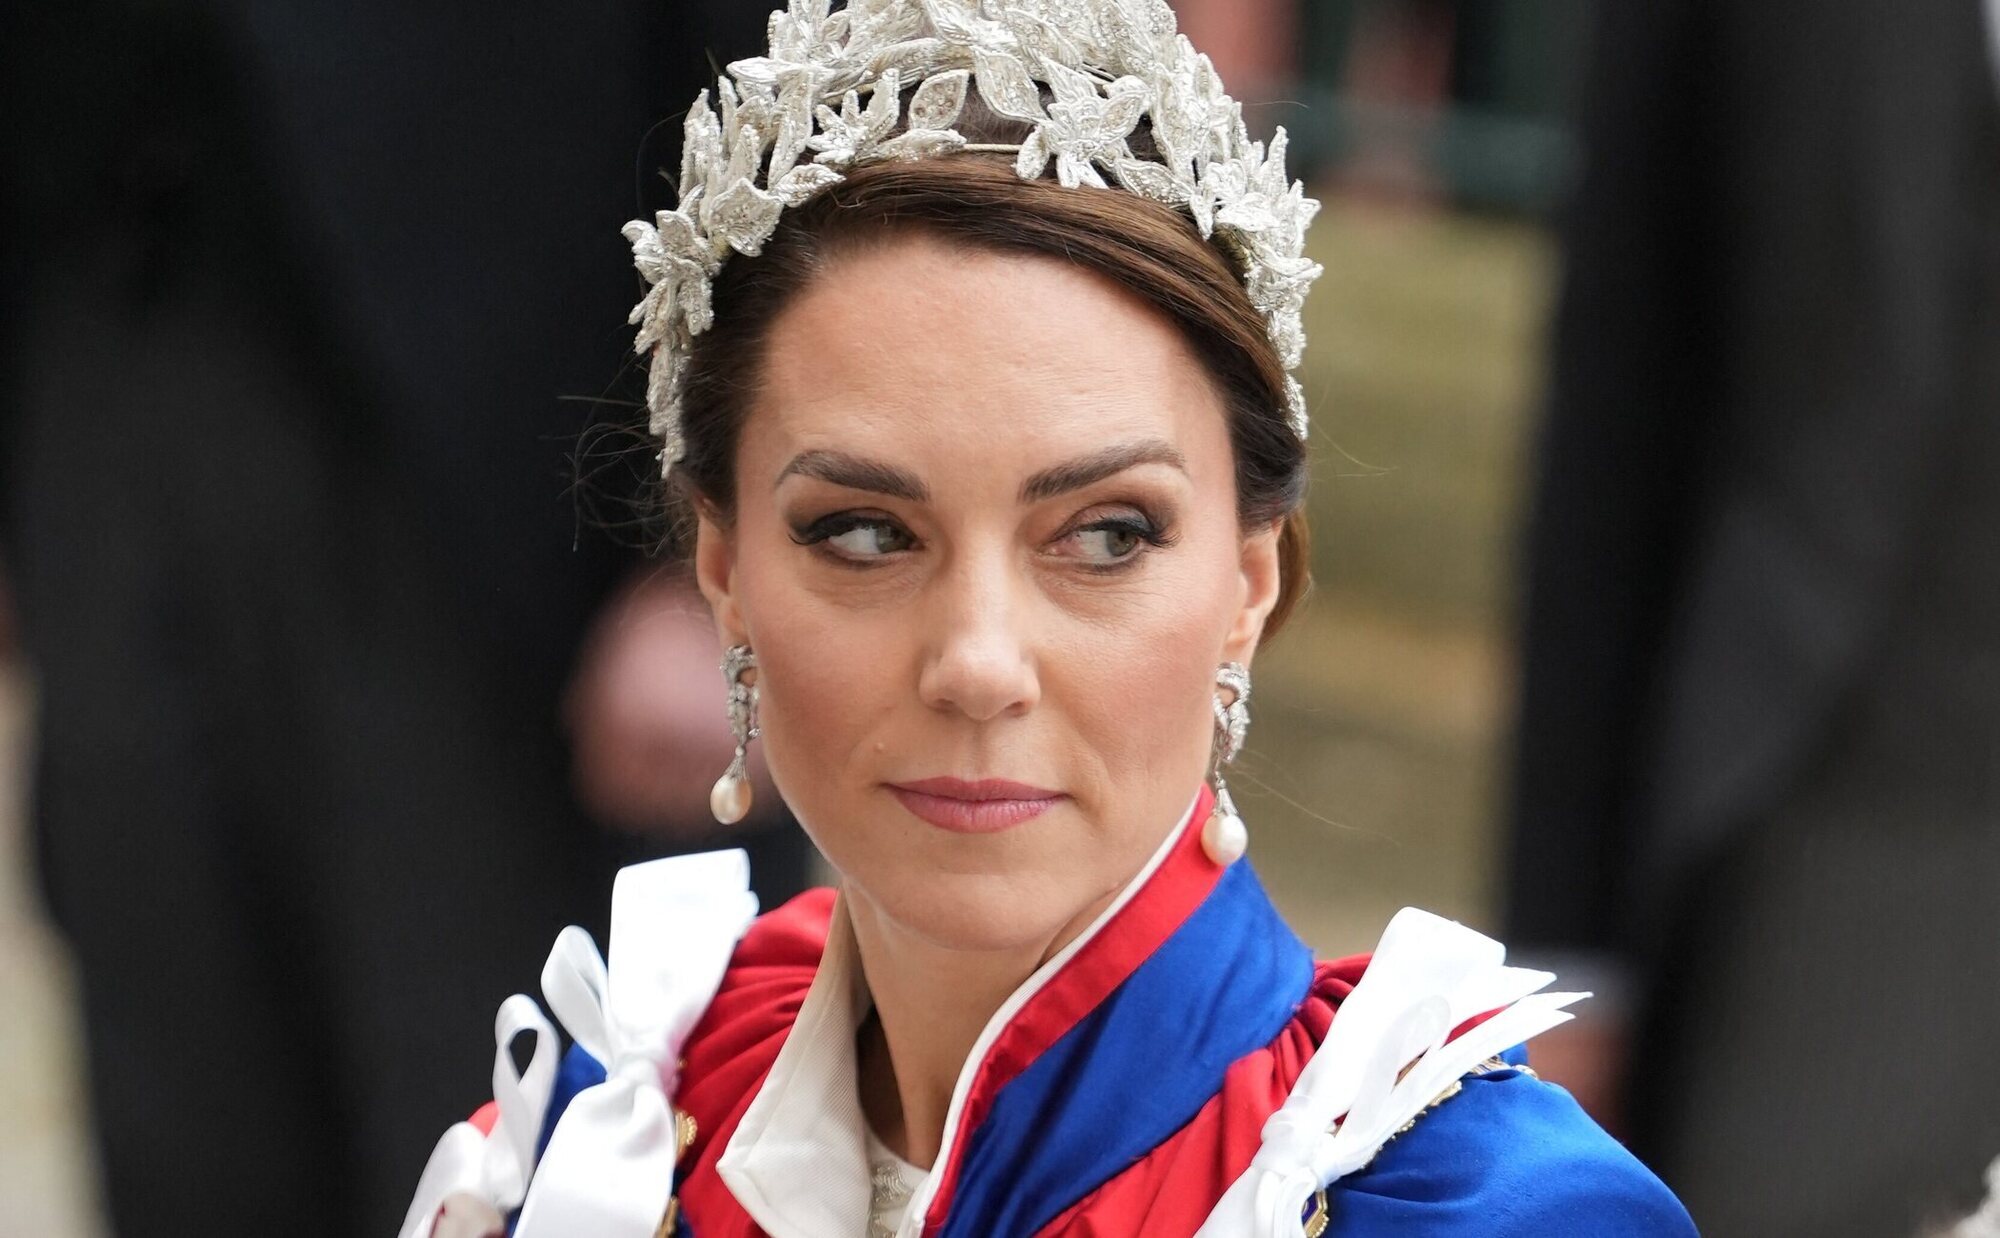 Helen Wade, periodista de la BBC, niega que se vaya a emitir un comunicado sobre Kate Middleton de manera inminente